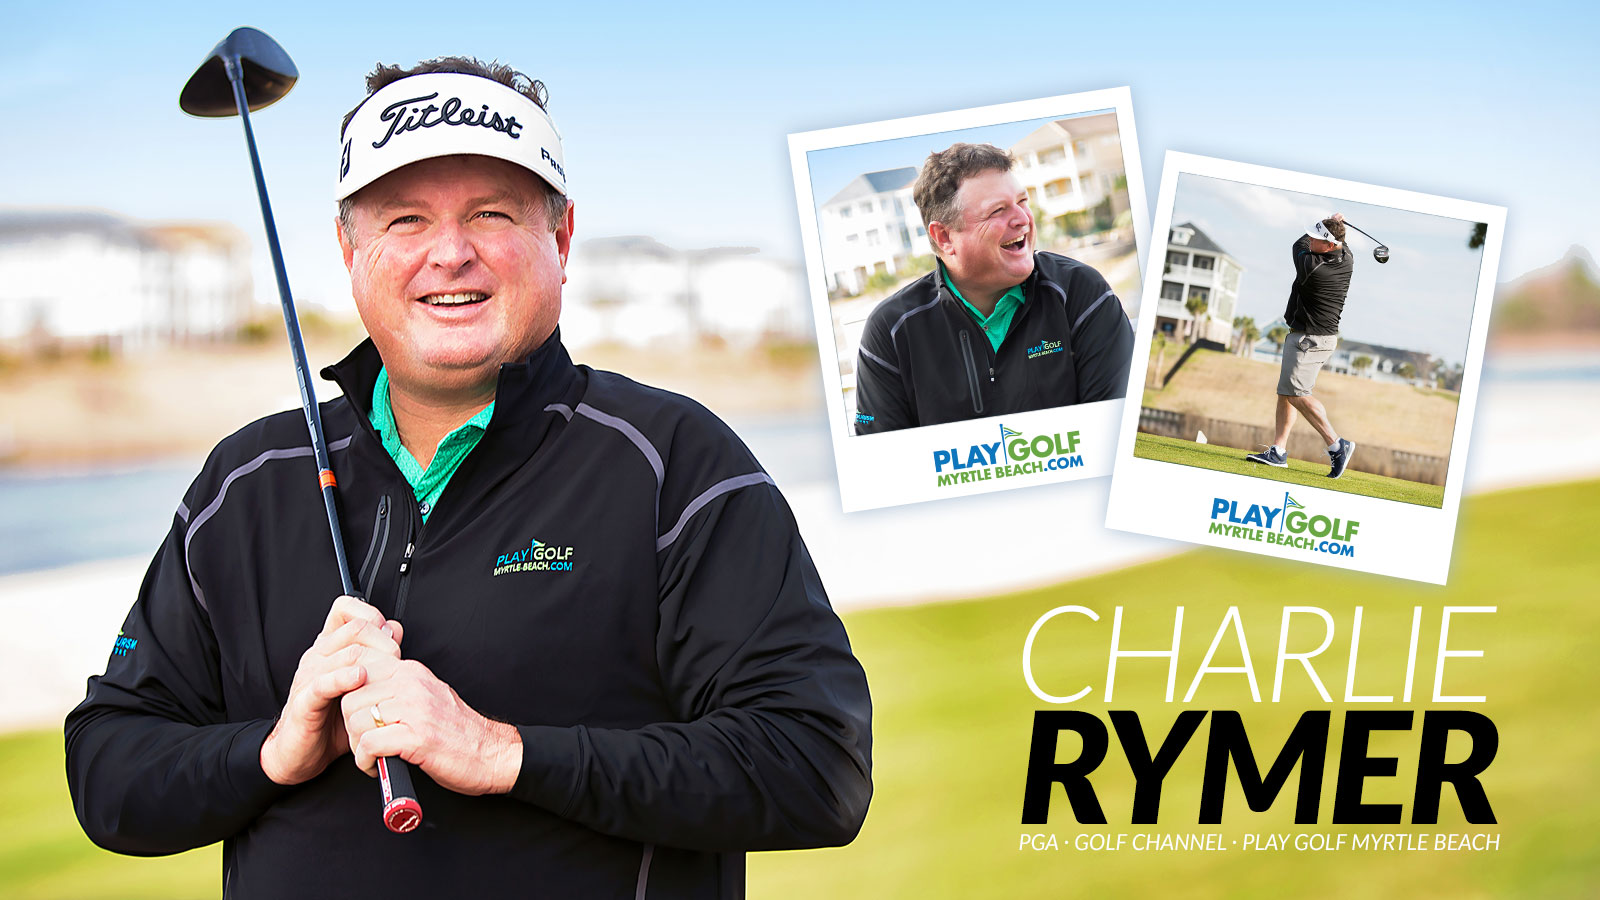 Charlie Rymer - PGA - Golf Channel - Play Golf Myrtle Beach